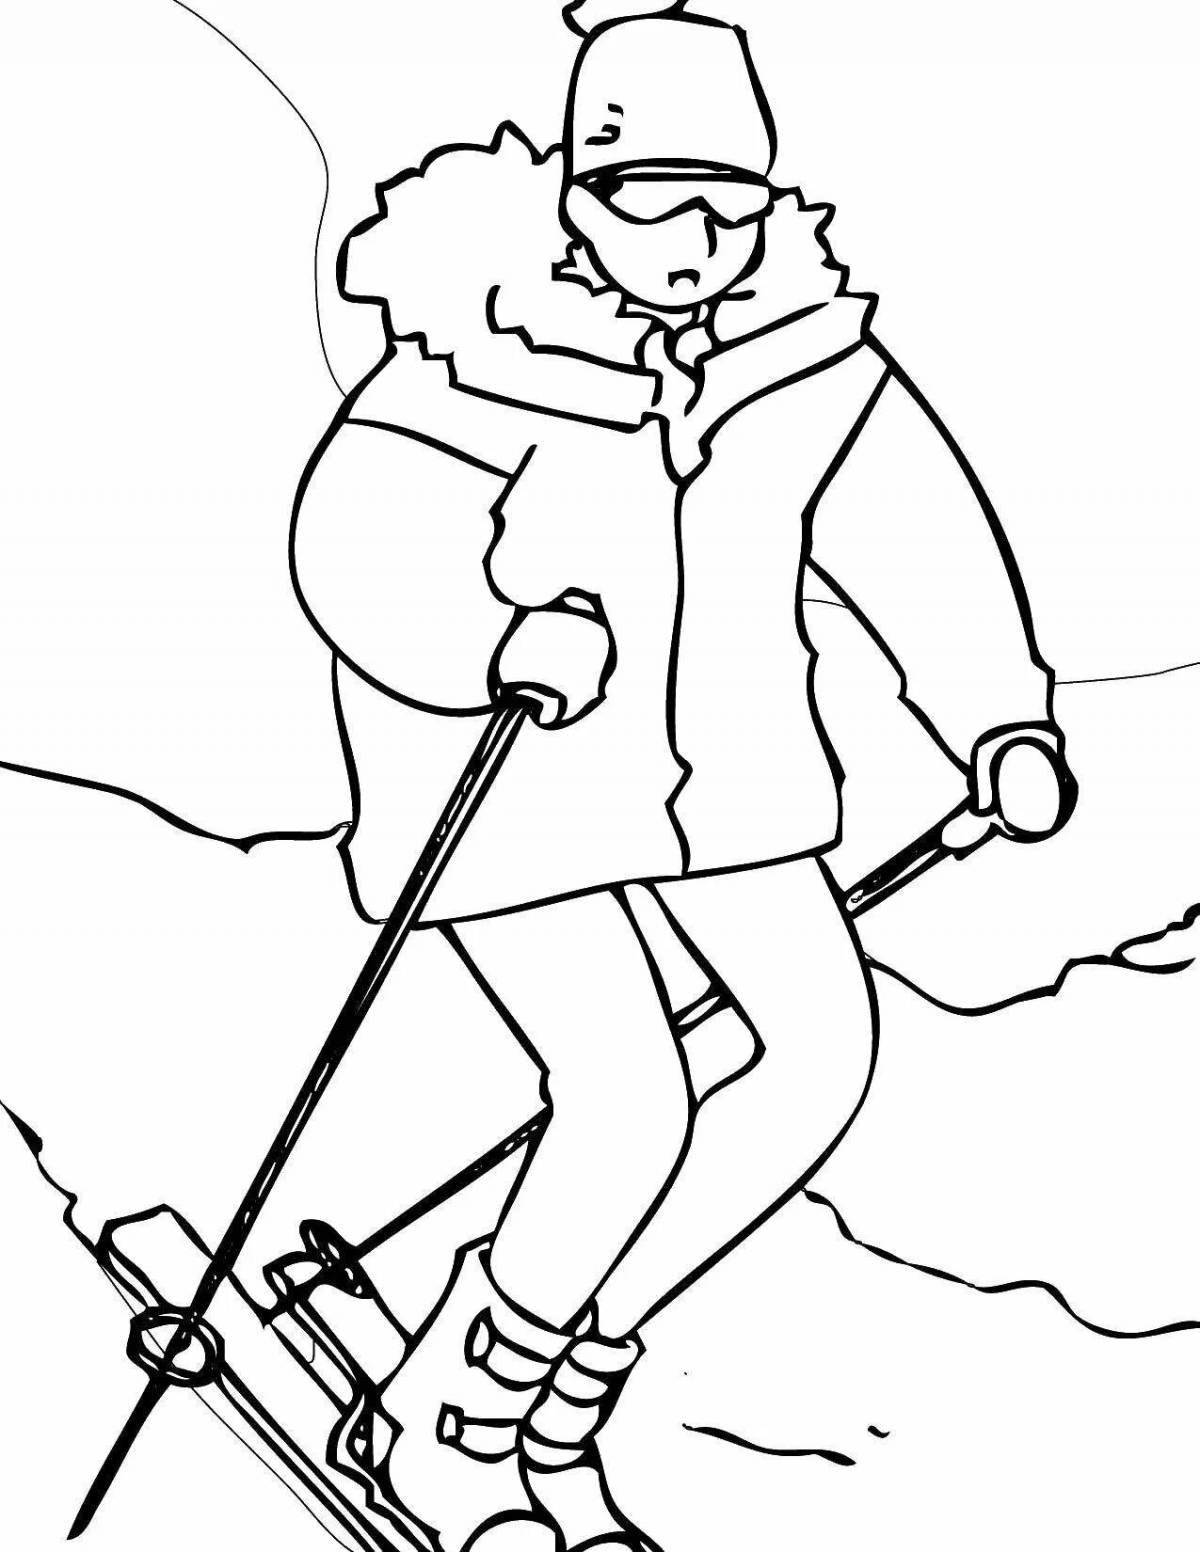 Toddler skier #8